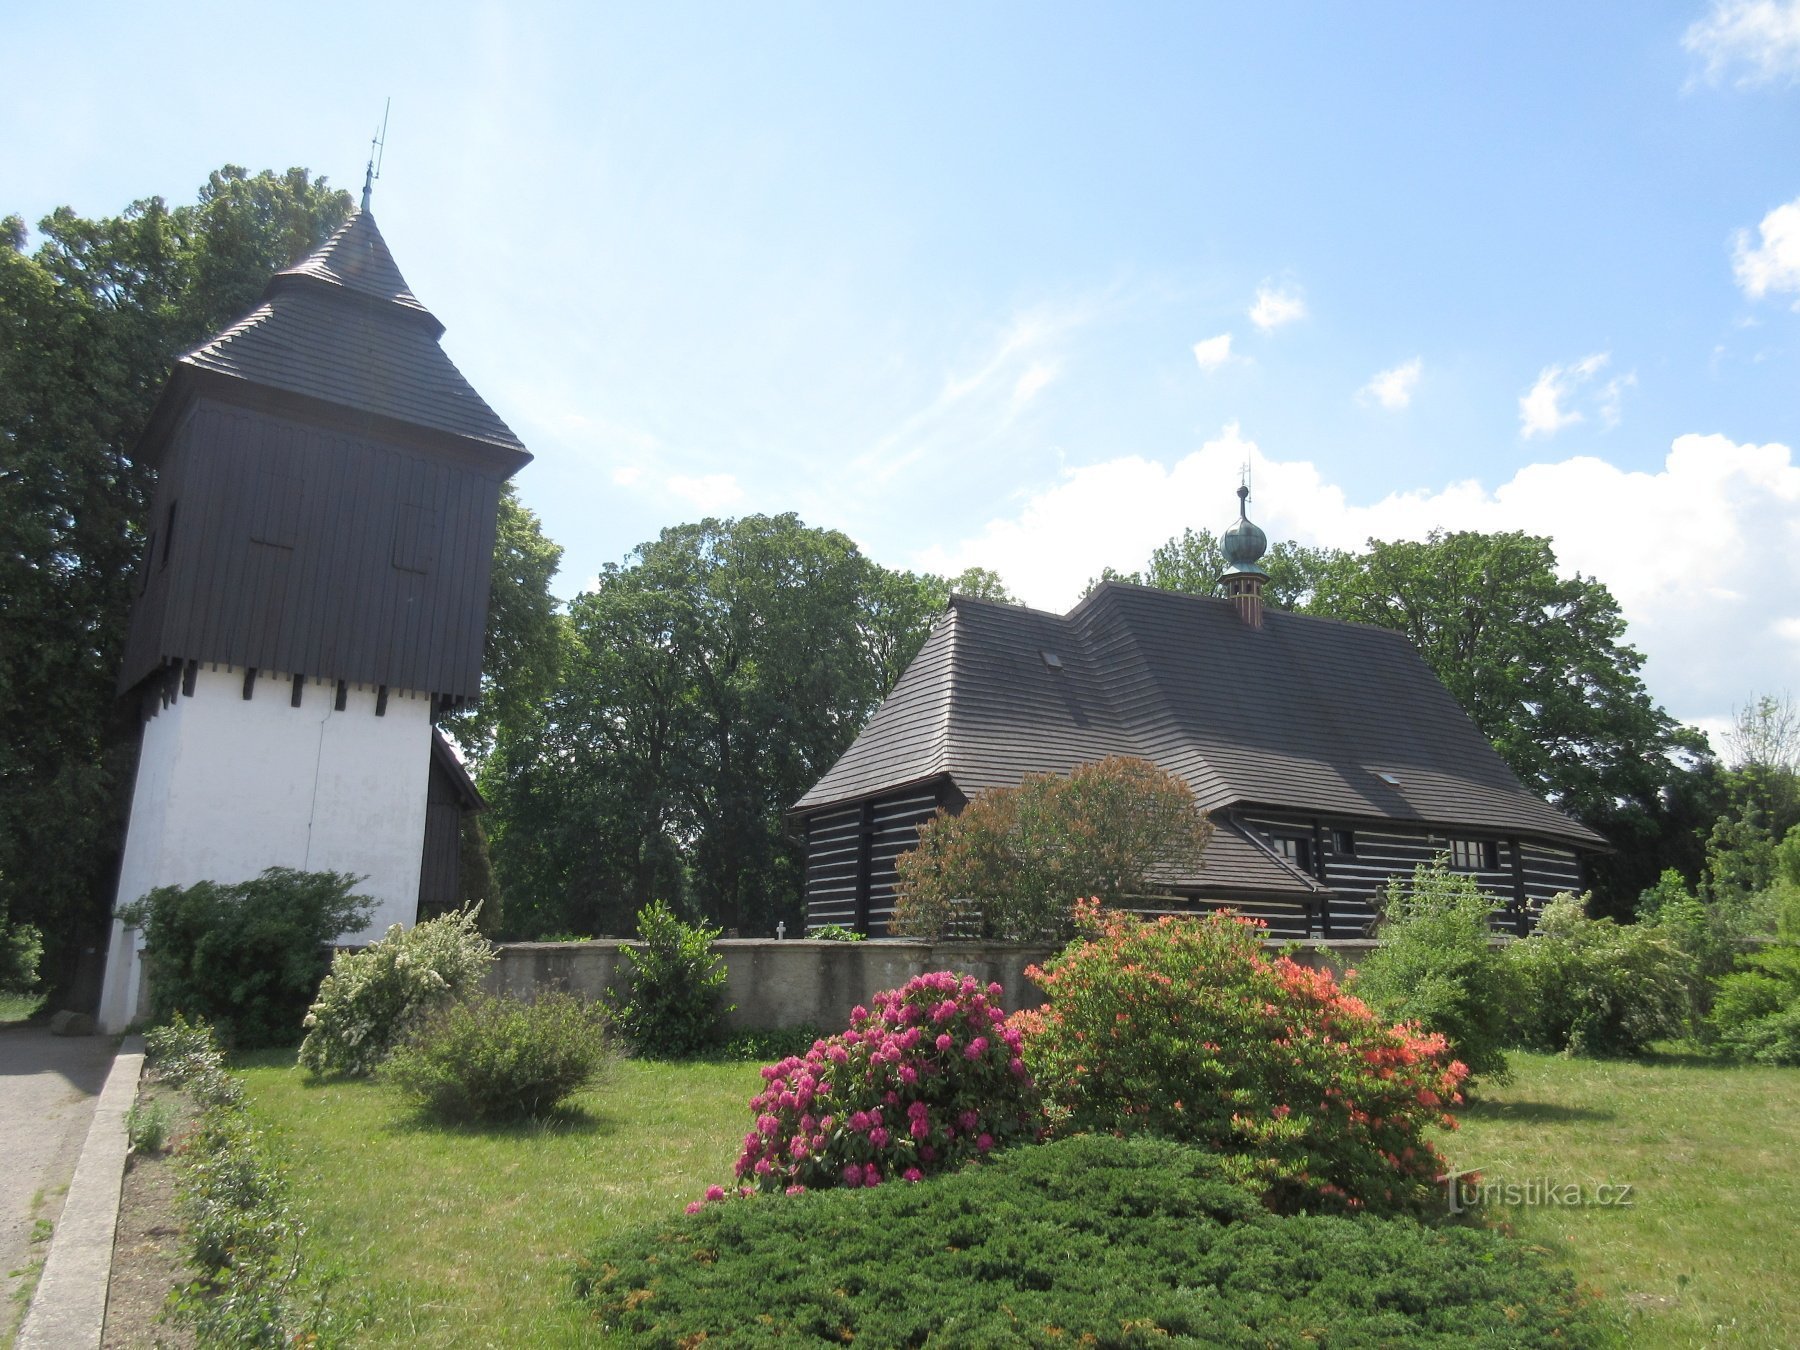 Slavoňov - drewniany kościół św. Jan Chrzciciel z dzwonnicą